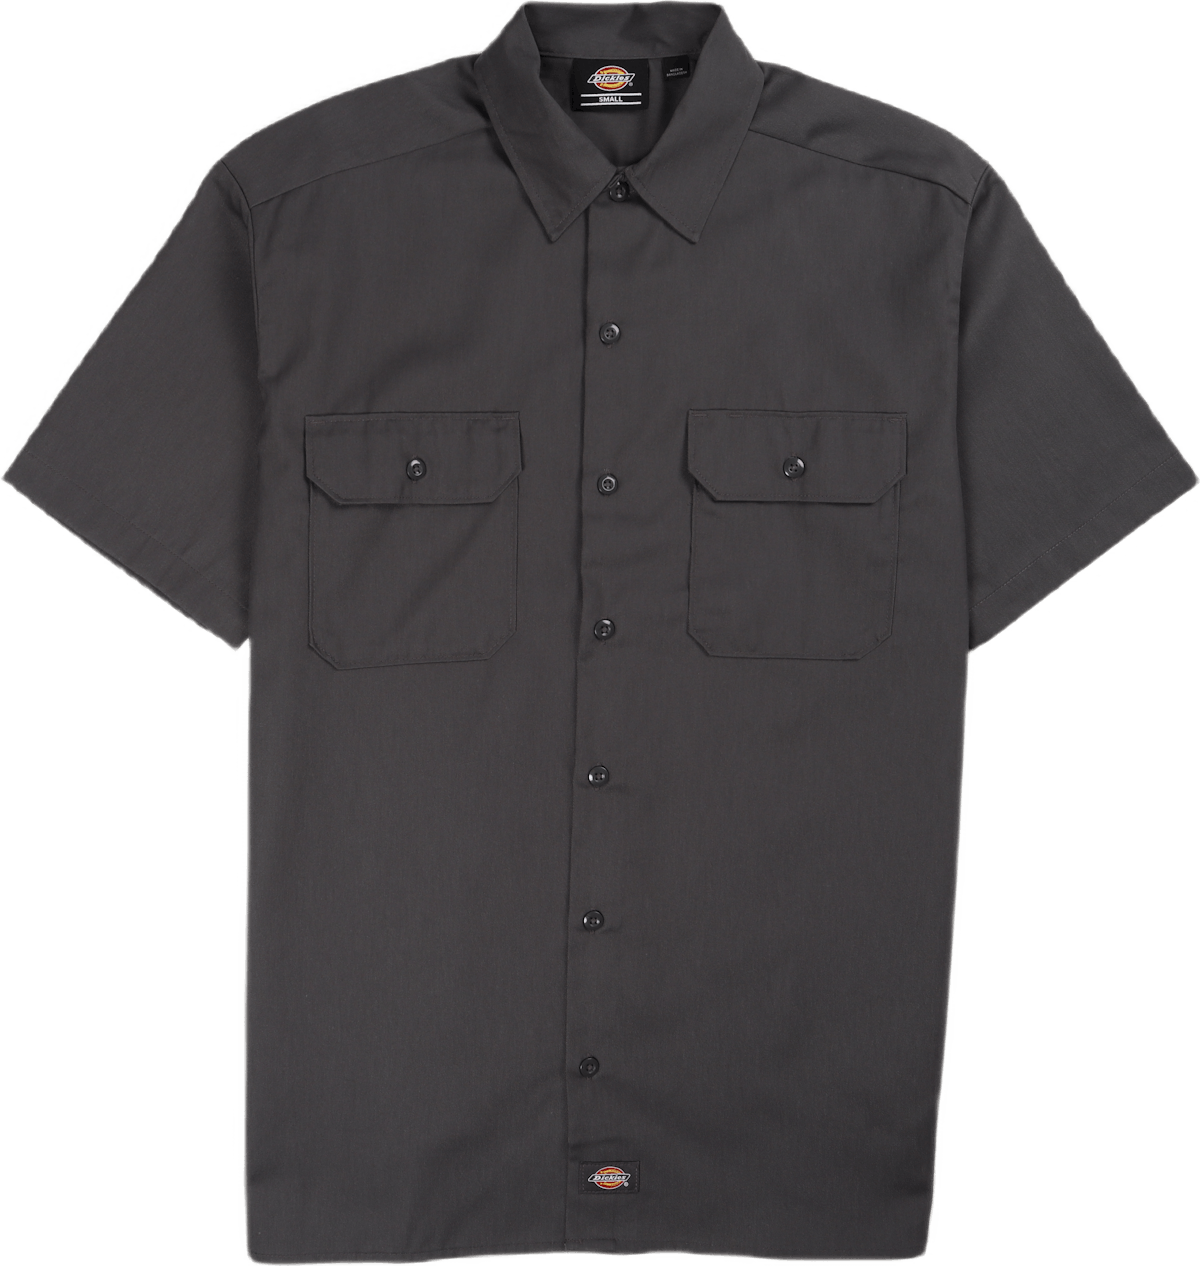 Work Shirt Ss Rec Charcoal Grey